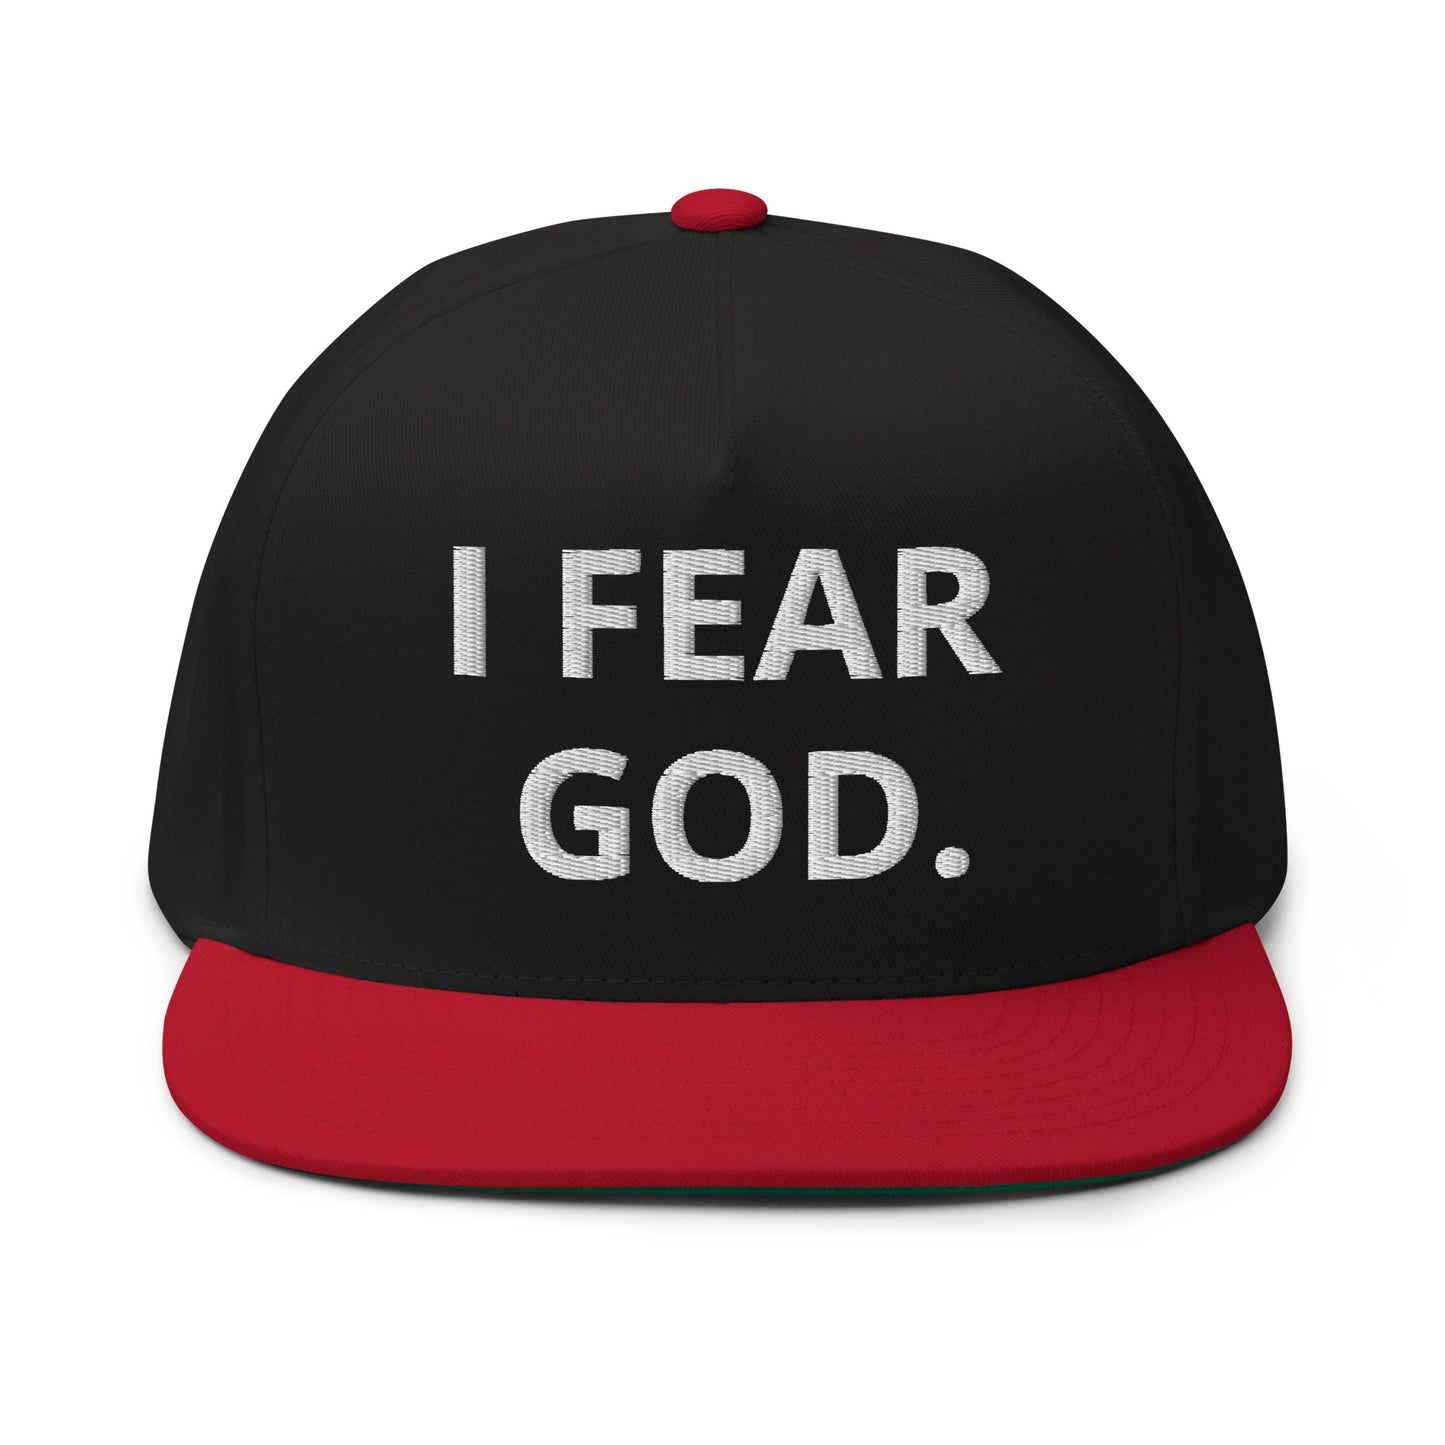 I Fear God. Flat Bill Cap